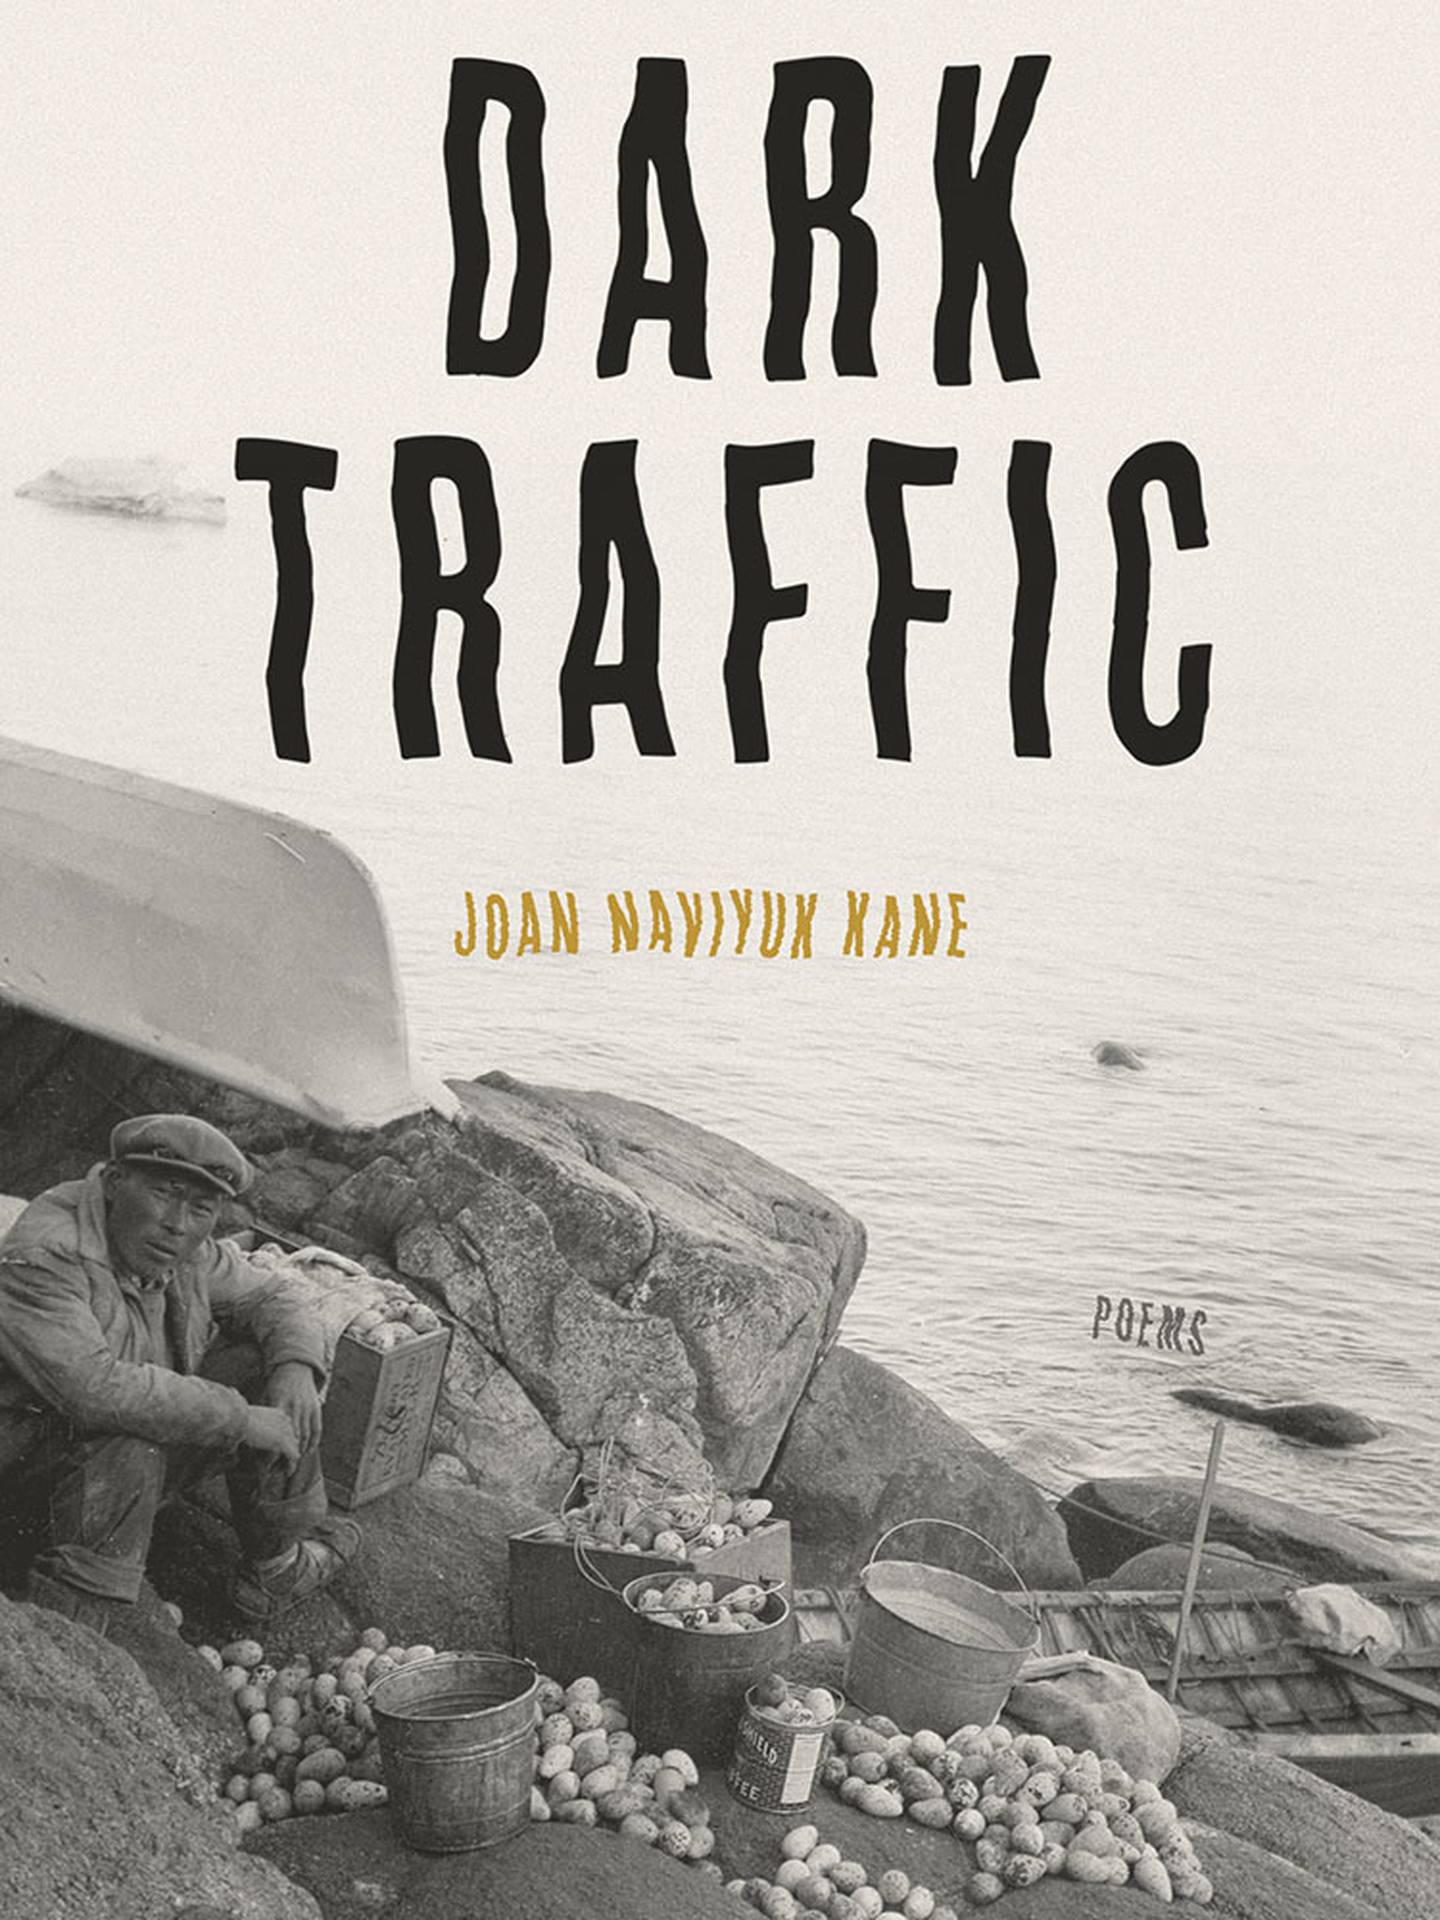 “Dark Traffic,” by Joan Naviyuk Kane